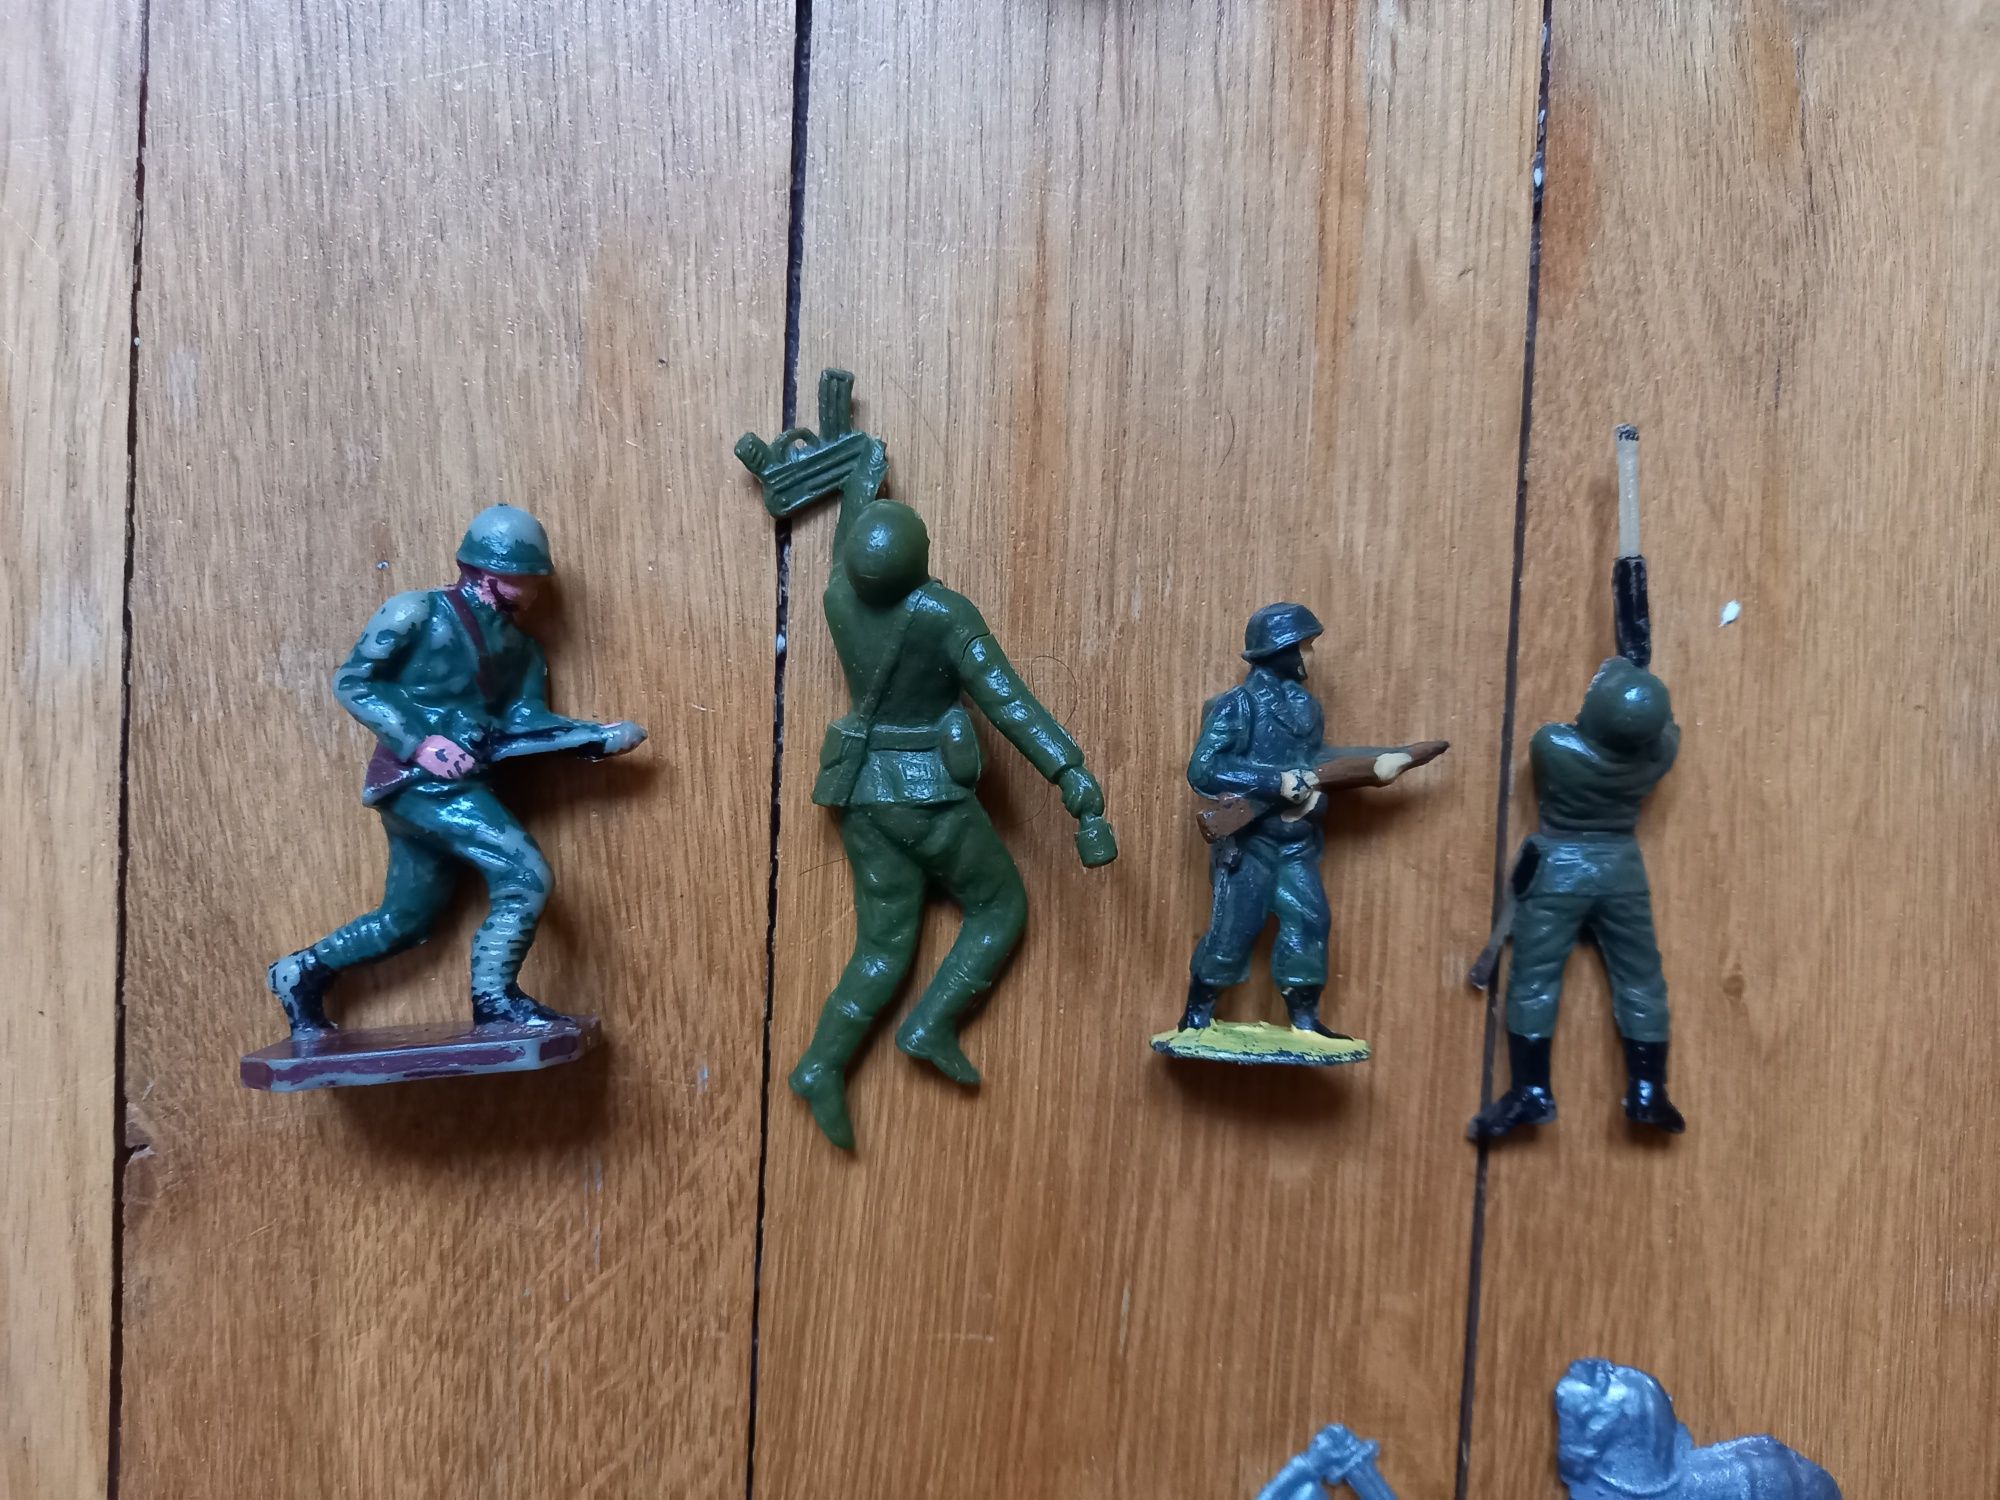 Figurki prl żołnierzyki rycerzyki